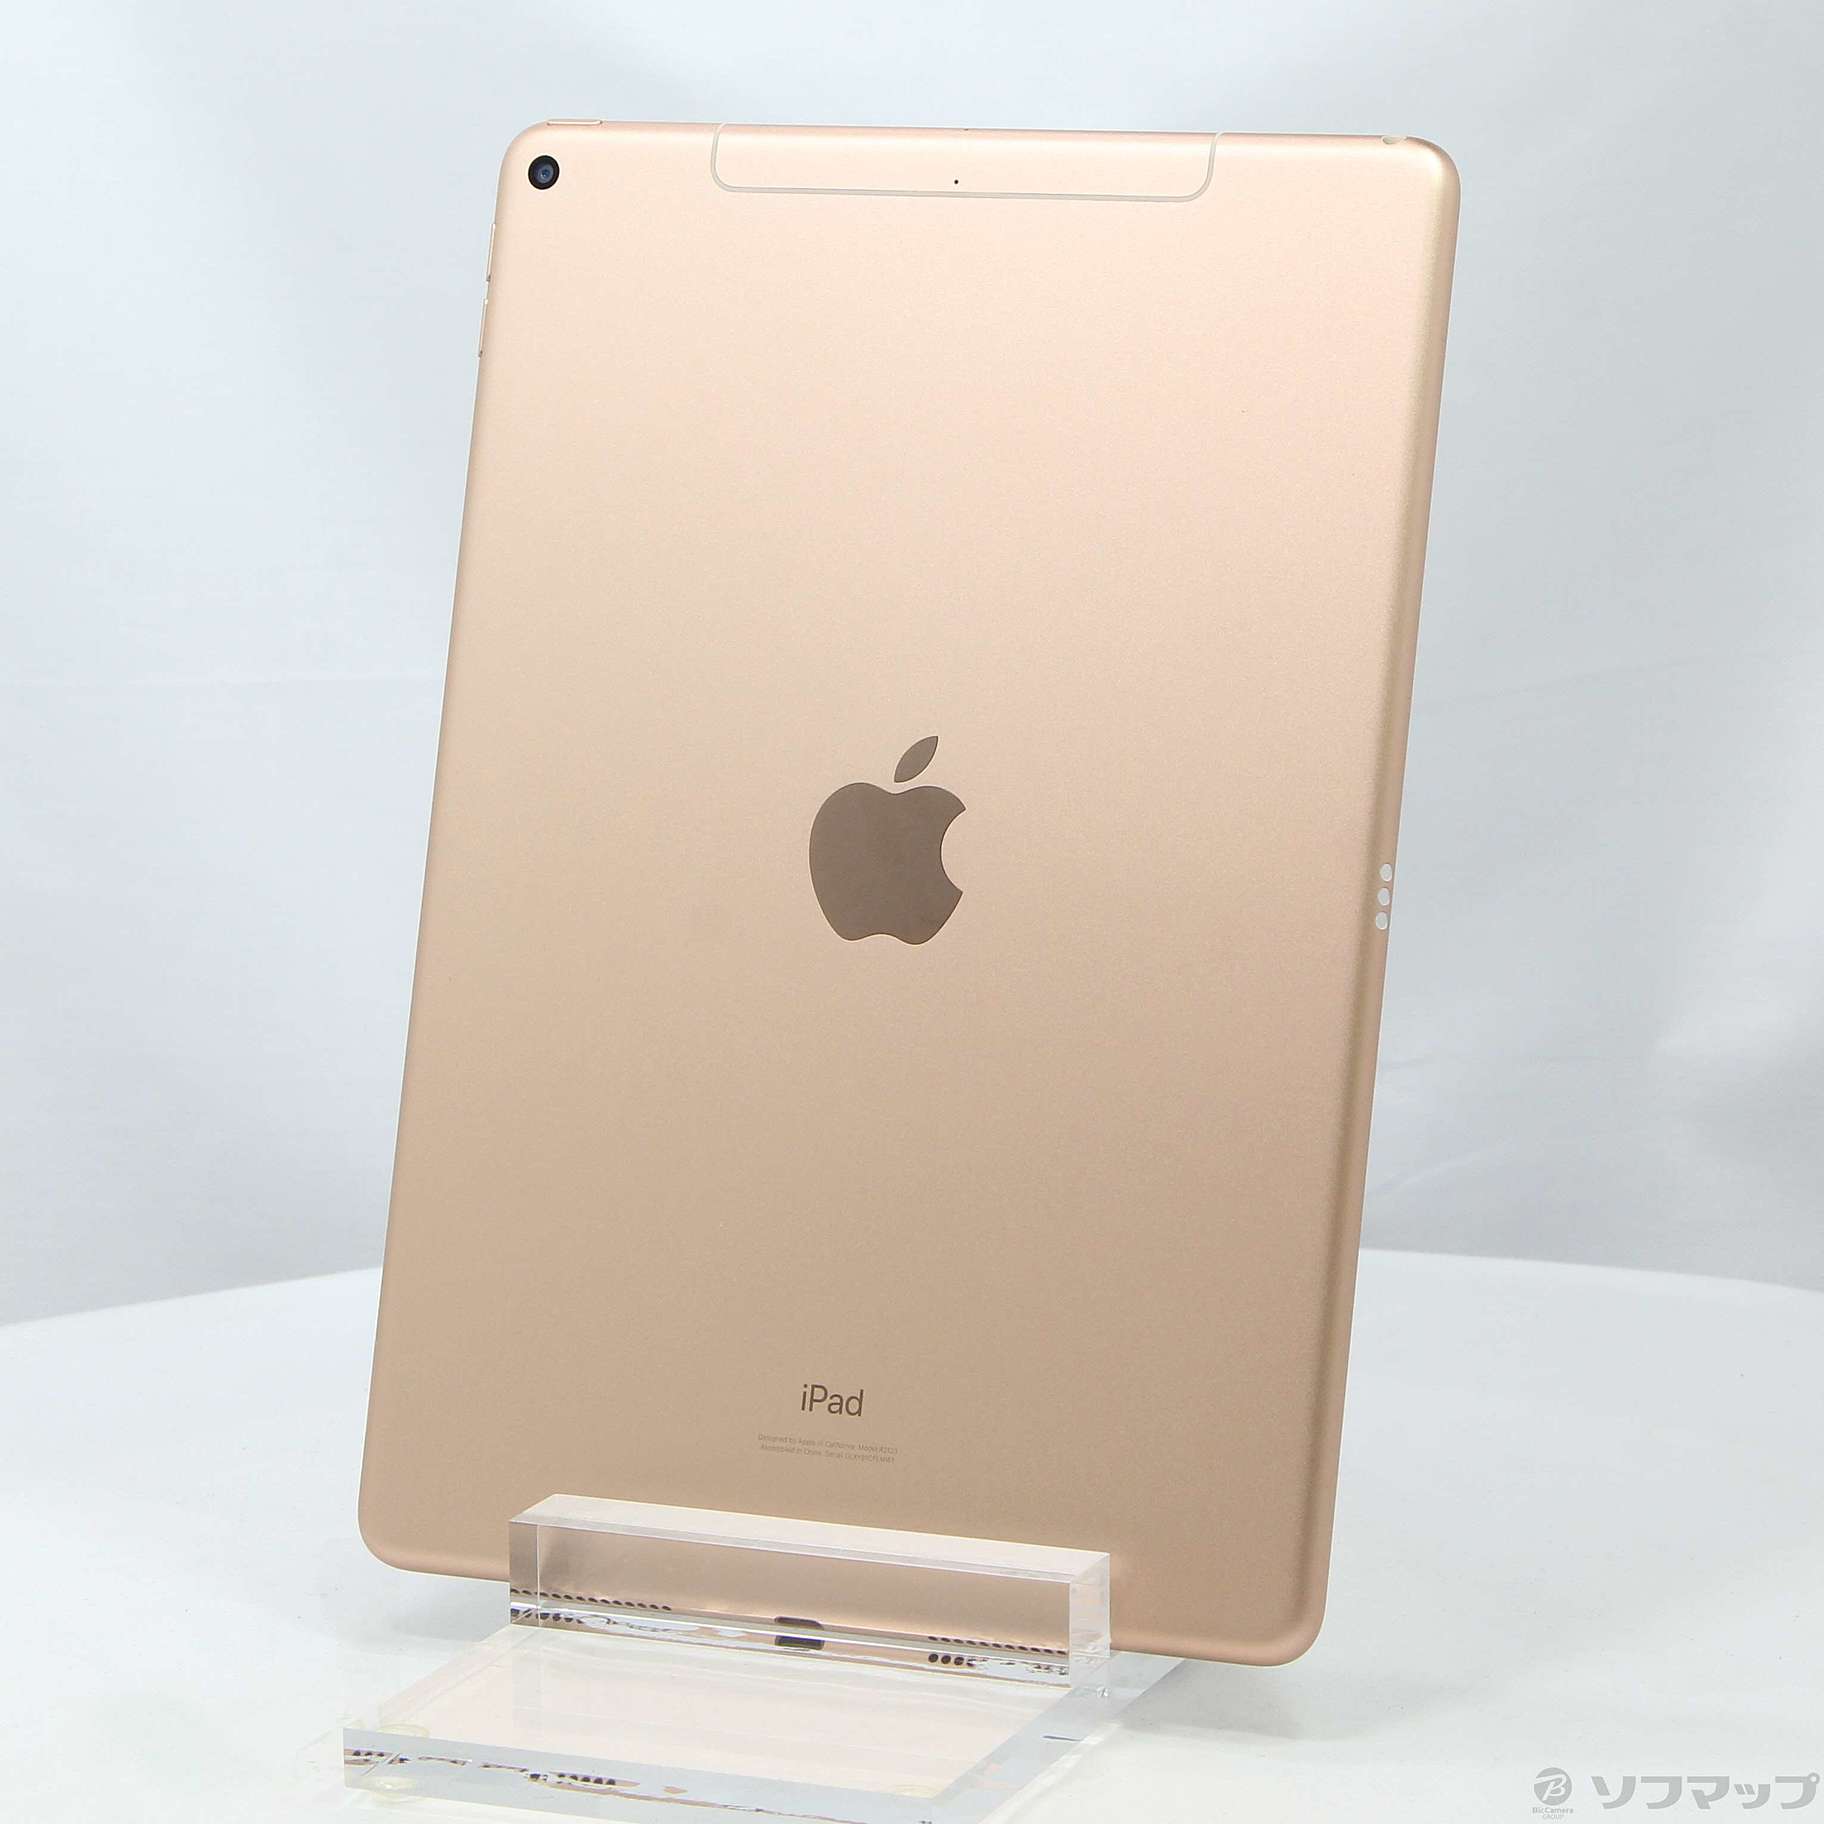 SIMフリー iPad 第6世代 32GB ゴールド 未使用品